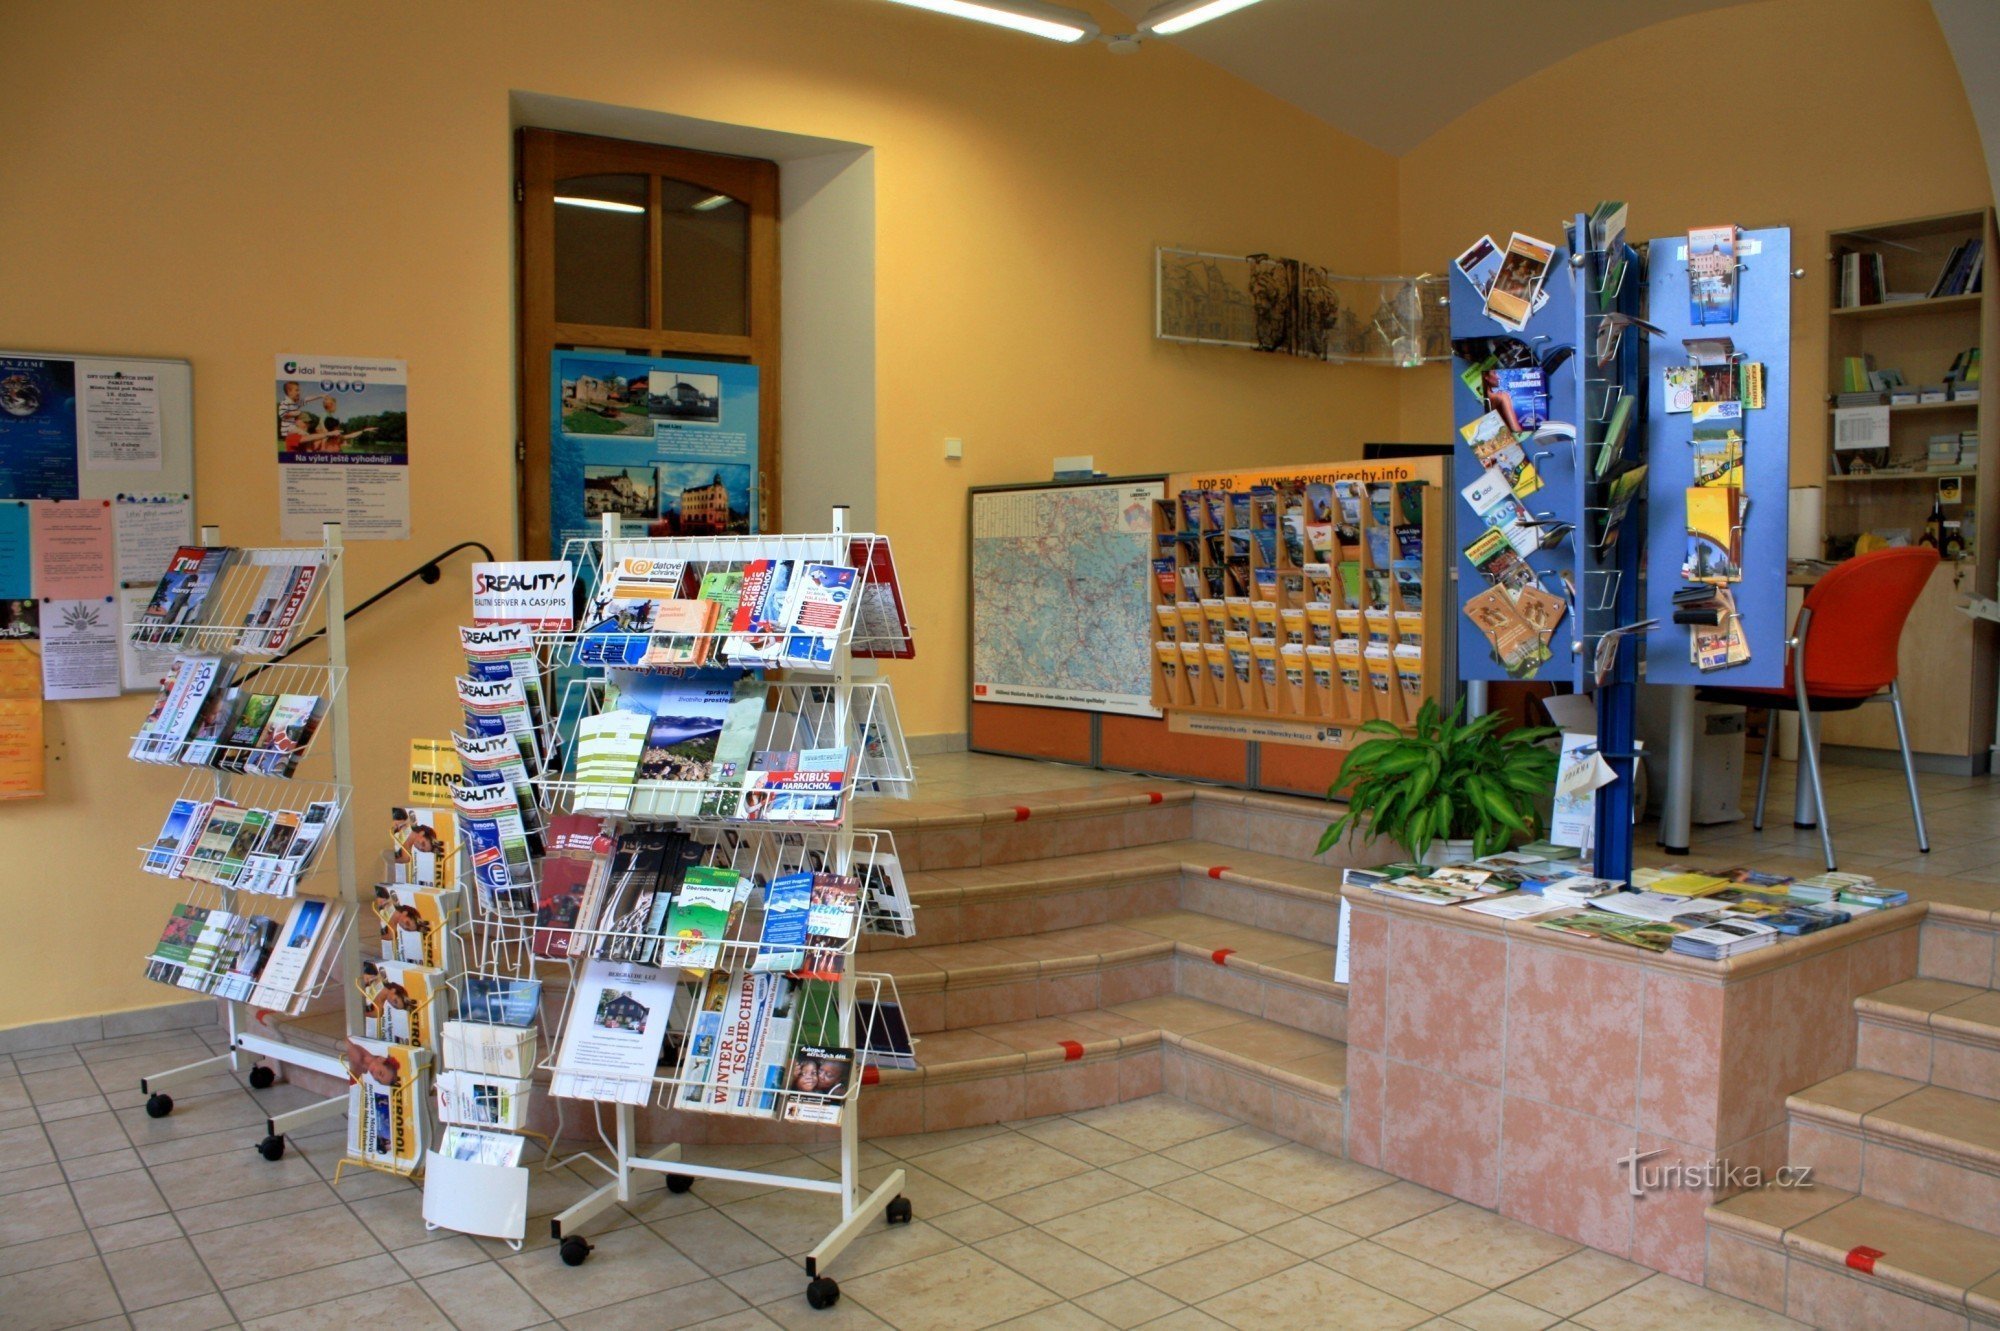 Interiorul centrului de informare